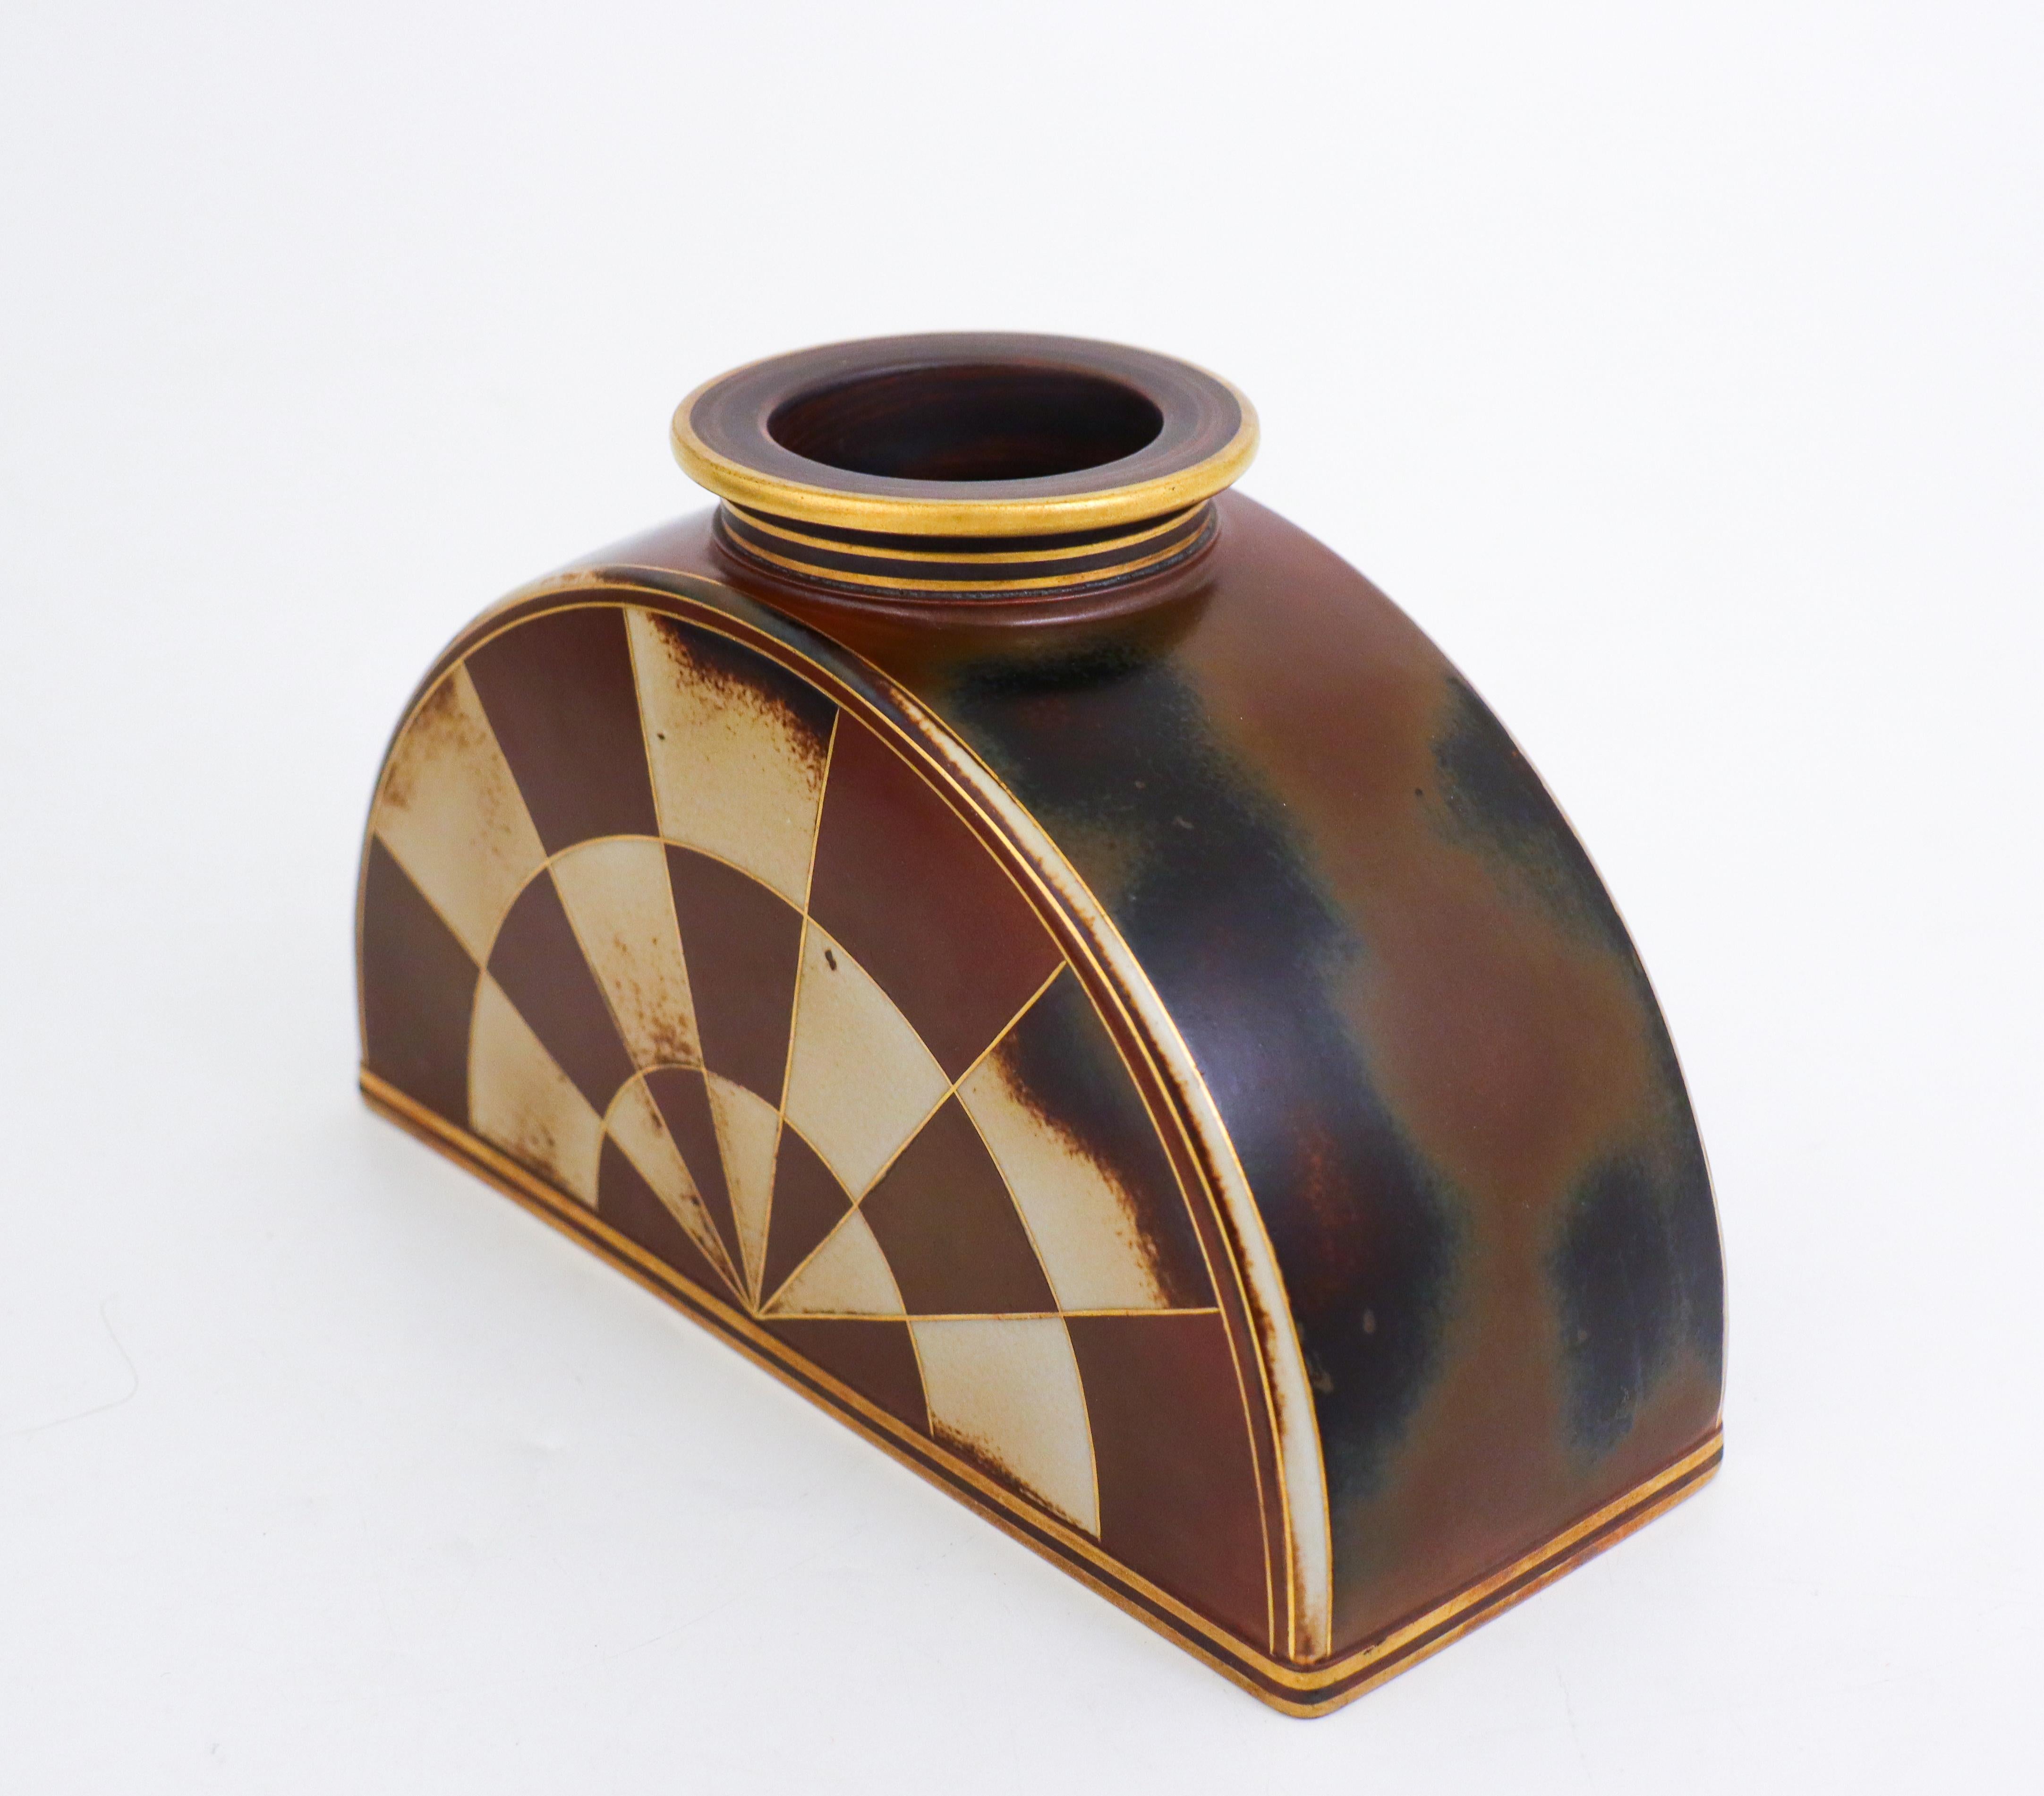 Die seltene Vase wurde von Gunnar Nylund bei Rörstrand entworfen. Sie ist in Flambé-Technik gehalten und wurde in den 1940er Jahren entworfen. Die Vase ist 12,5 cm hoch und befindet sich in einem ausgezeichneten Zustand. 

Gunnar Nylund wurde in